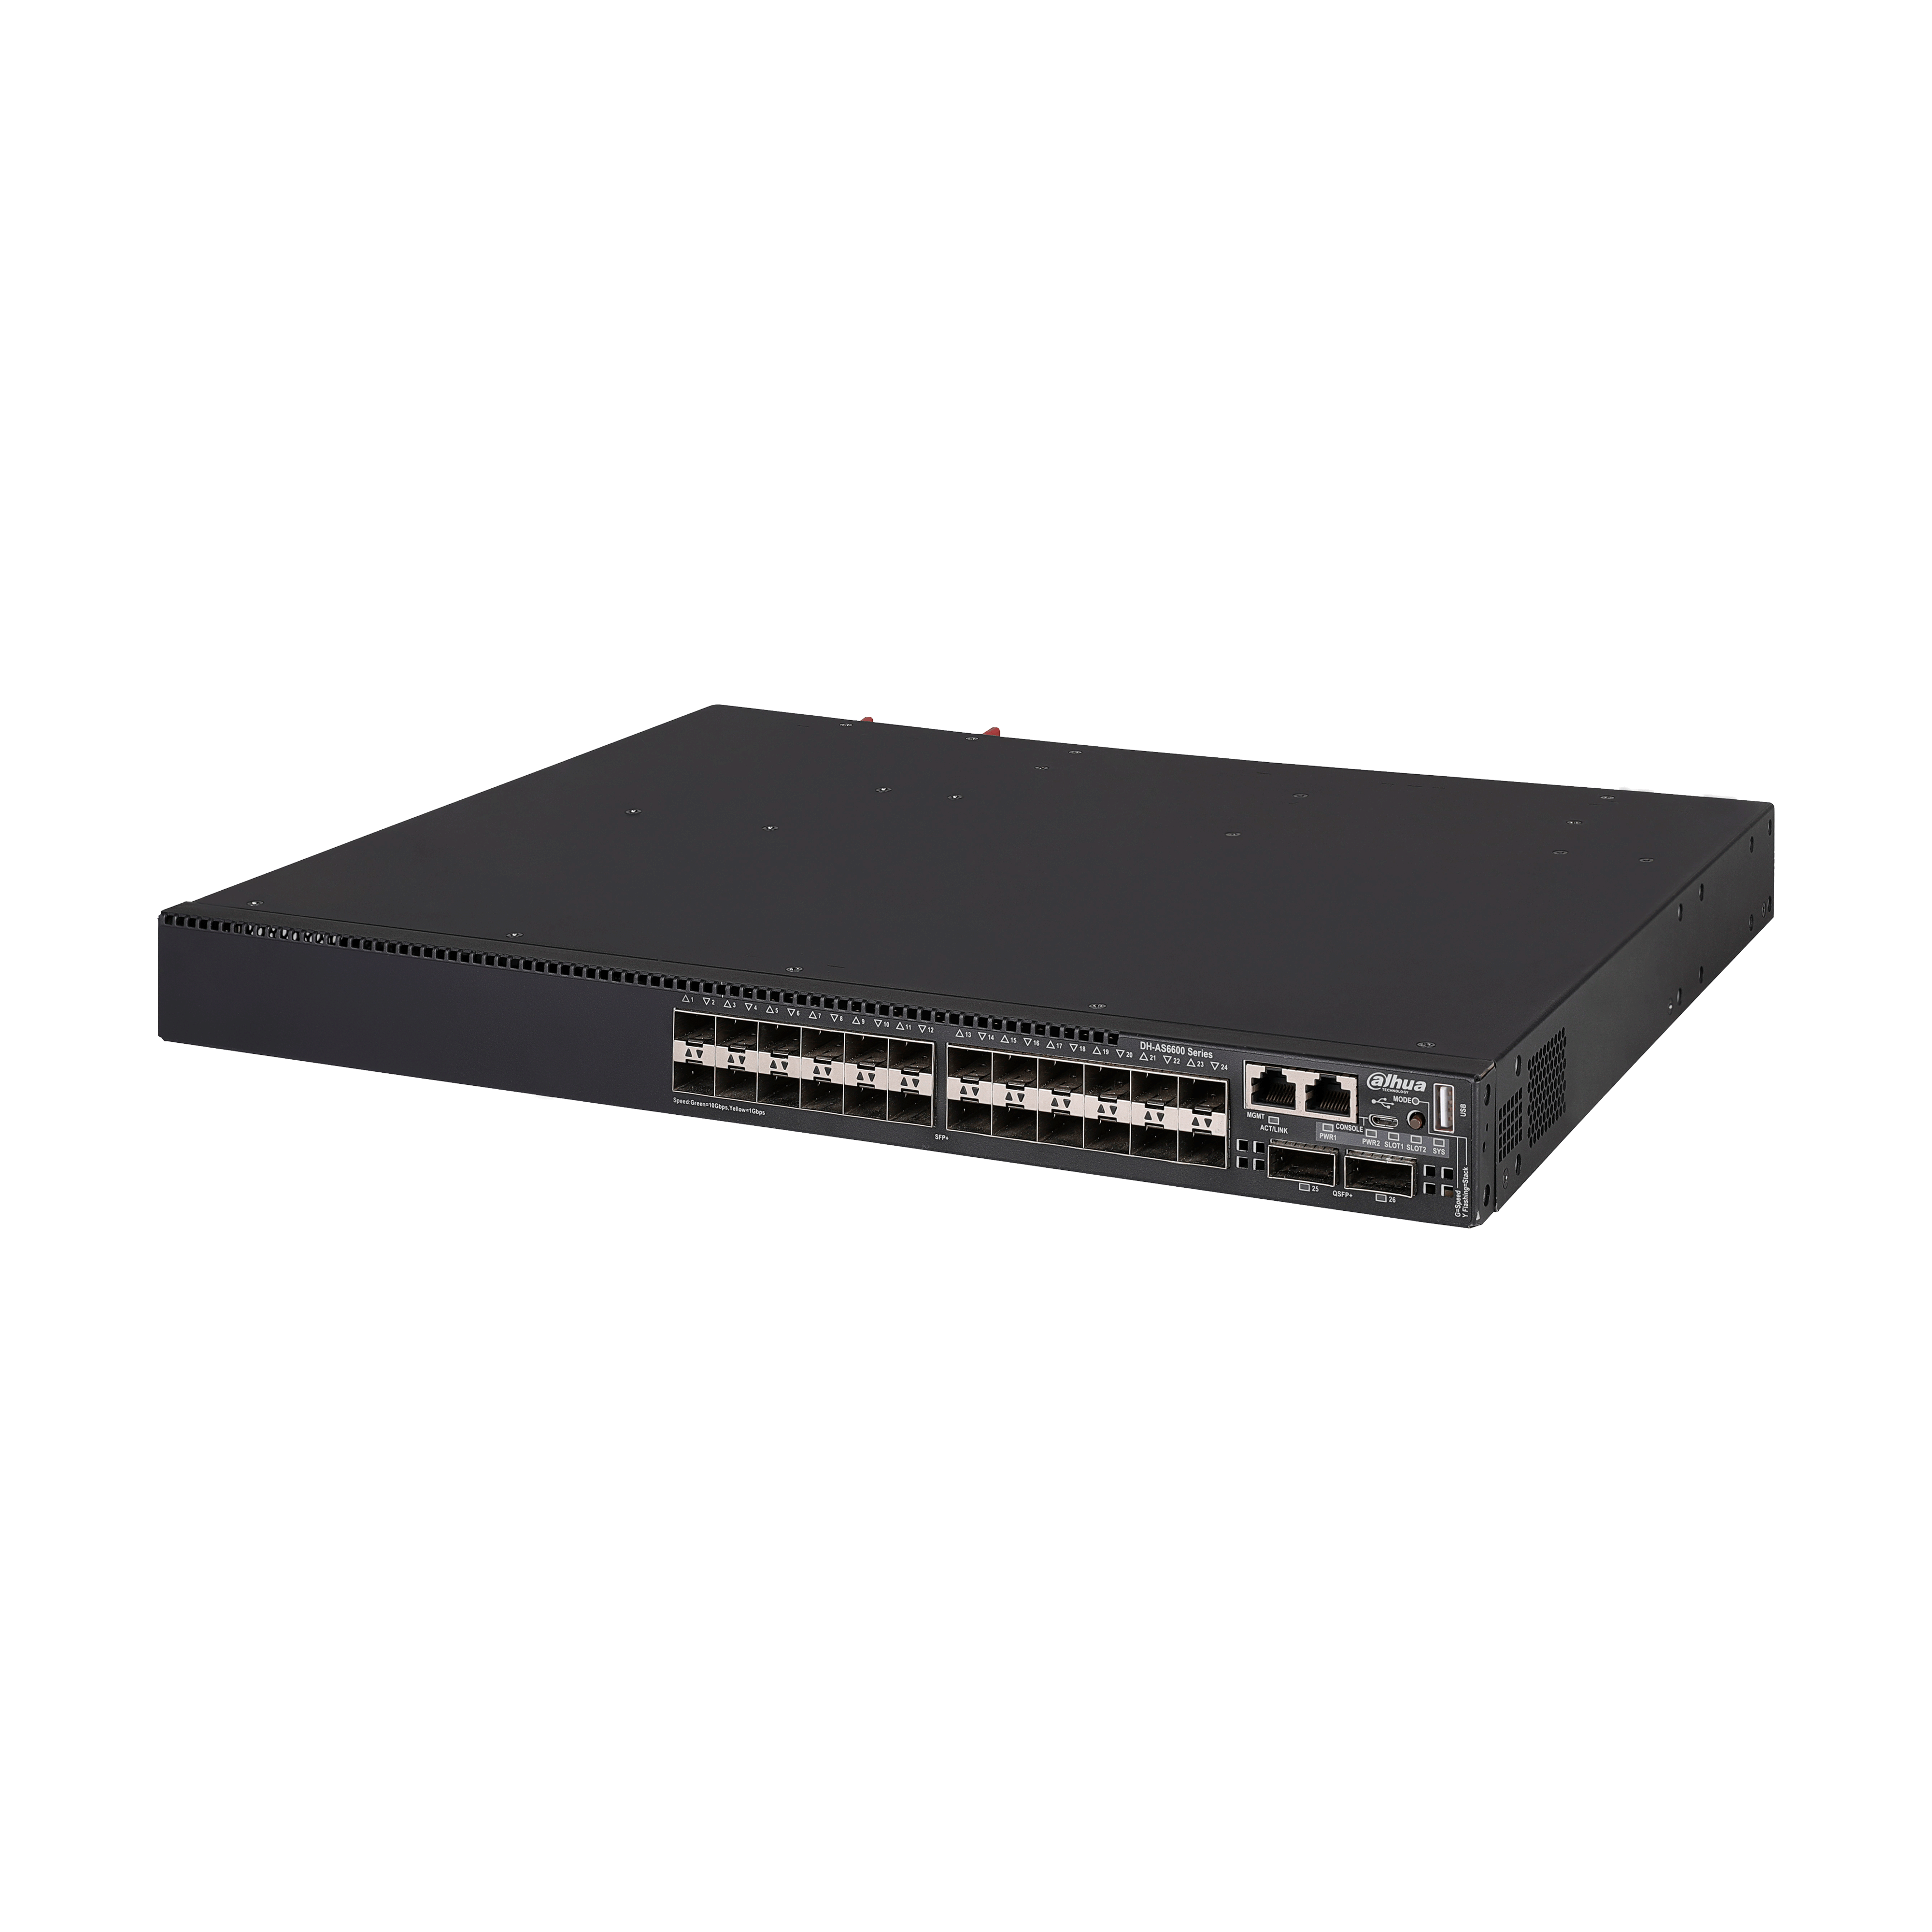 DAHUA AS6600-24XF2QF 26-Port Managed 10G SFP+ Switch with 24-Port 10G SFP+ and 2-Port 40G SFP+